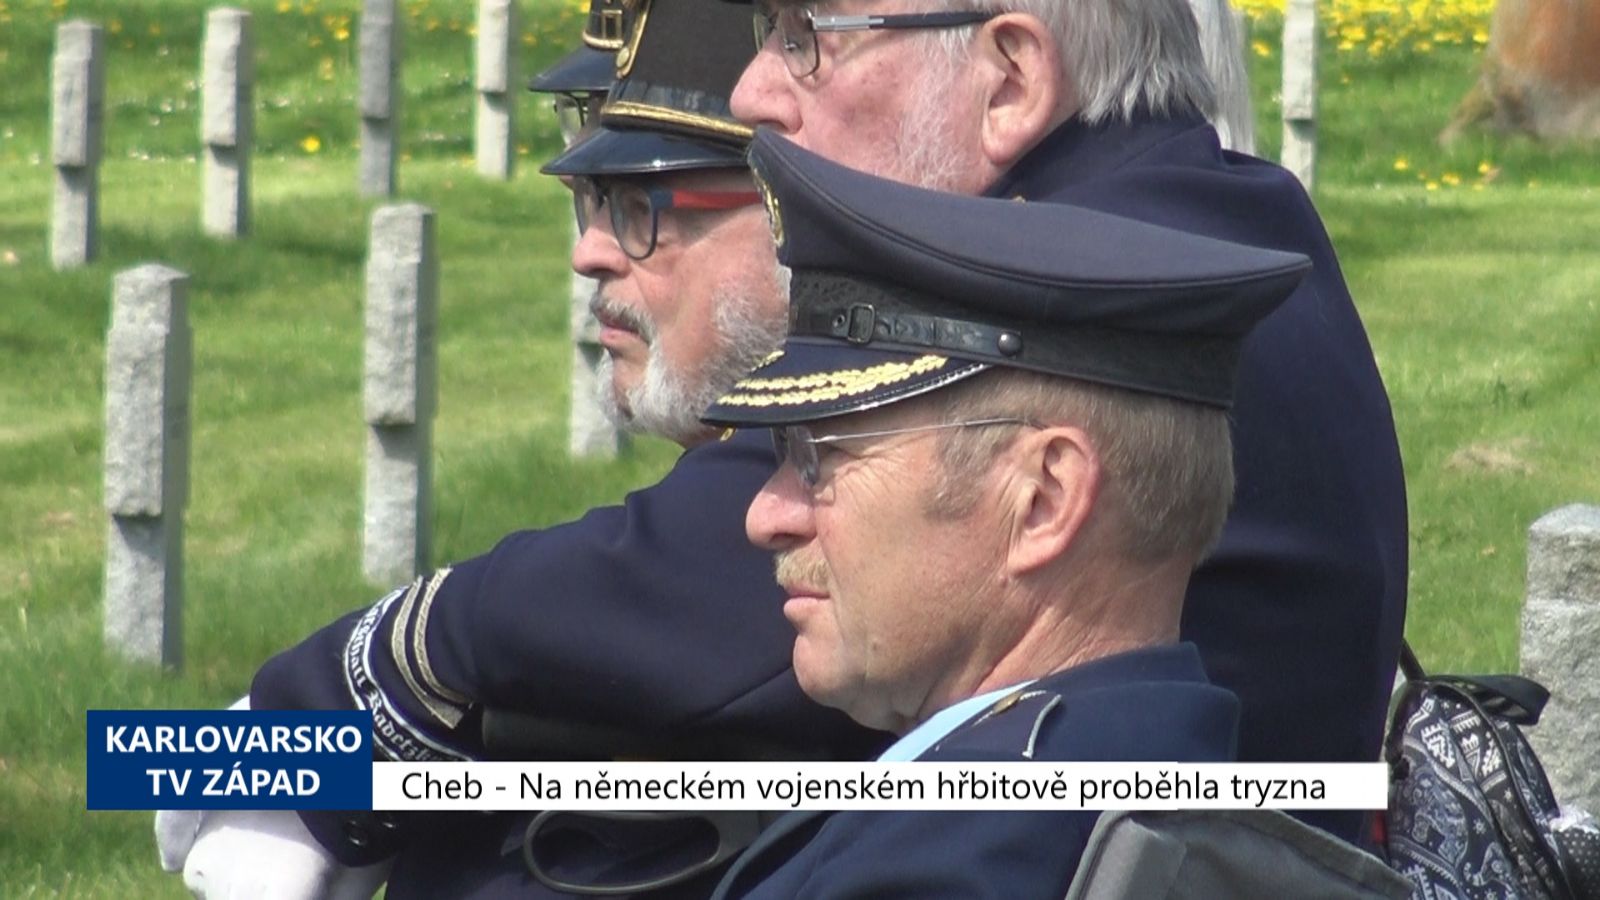 Cheb: Na německém vojenském hřbitově proběhla tryzna (TV Západ)